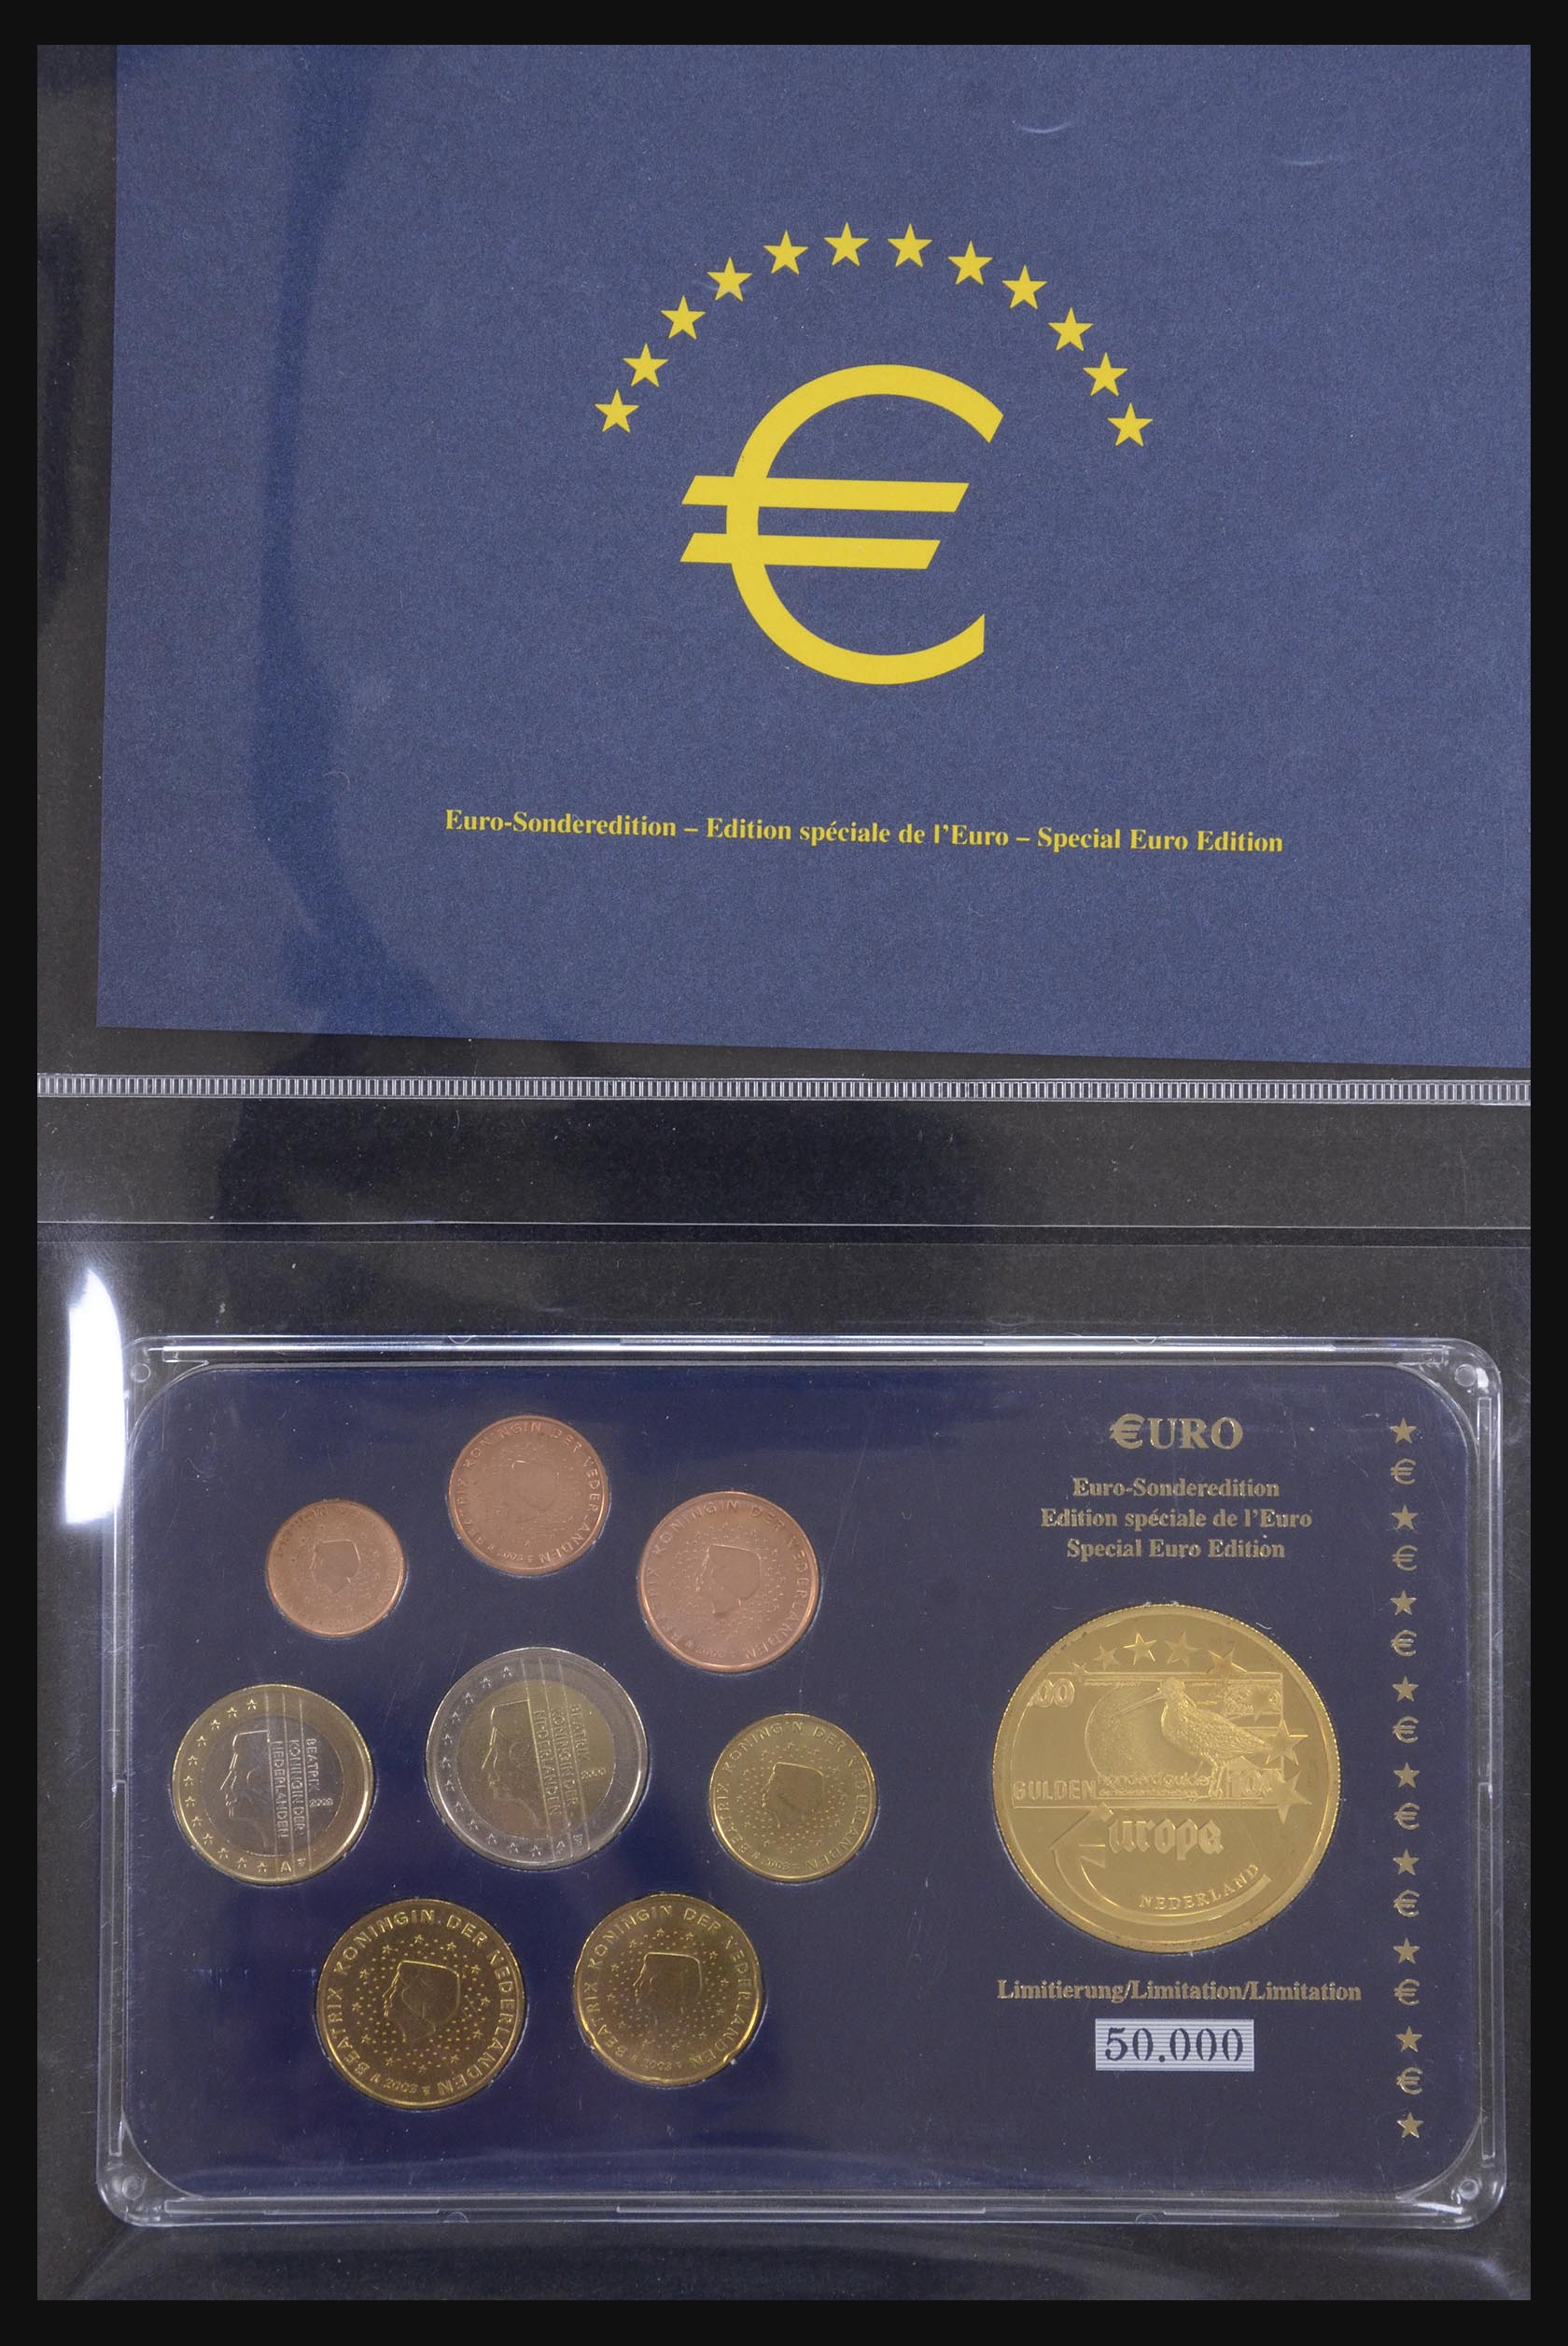 32149 005 - 32149 European countries eurocoins 2003.